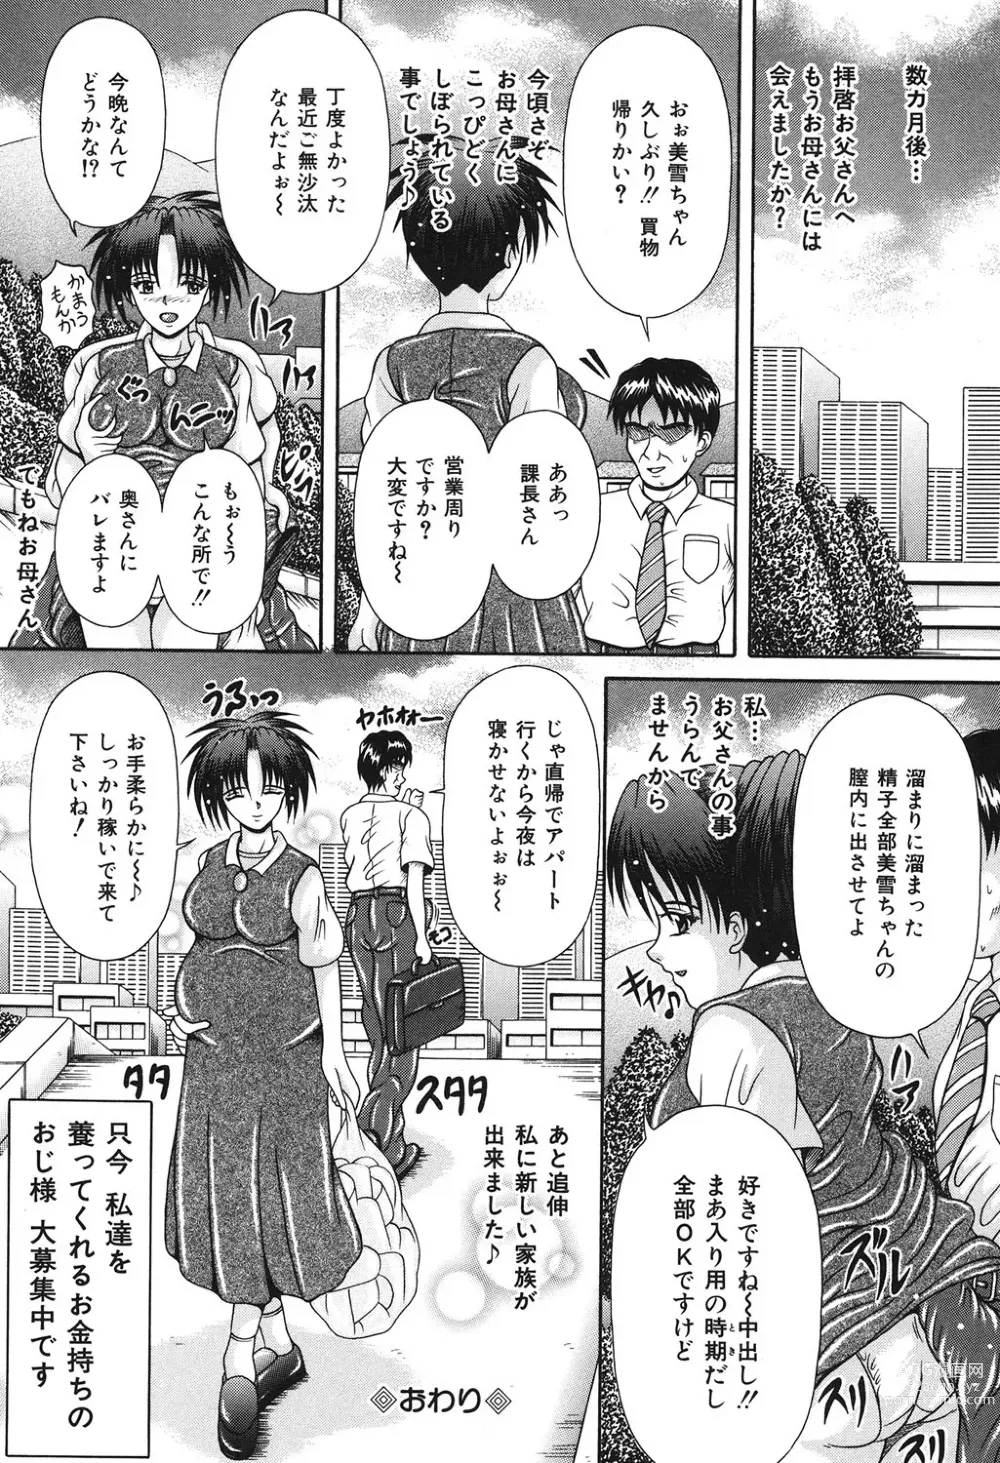 Page 143 of manga Todokanai Zekkyou - Nicht Erreichen Schreien